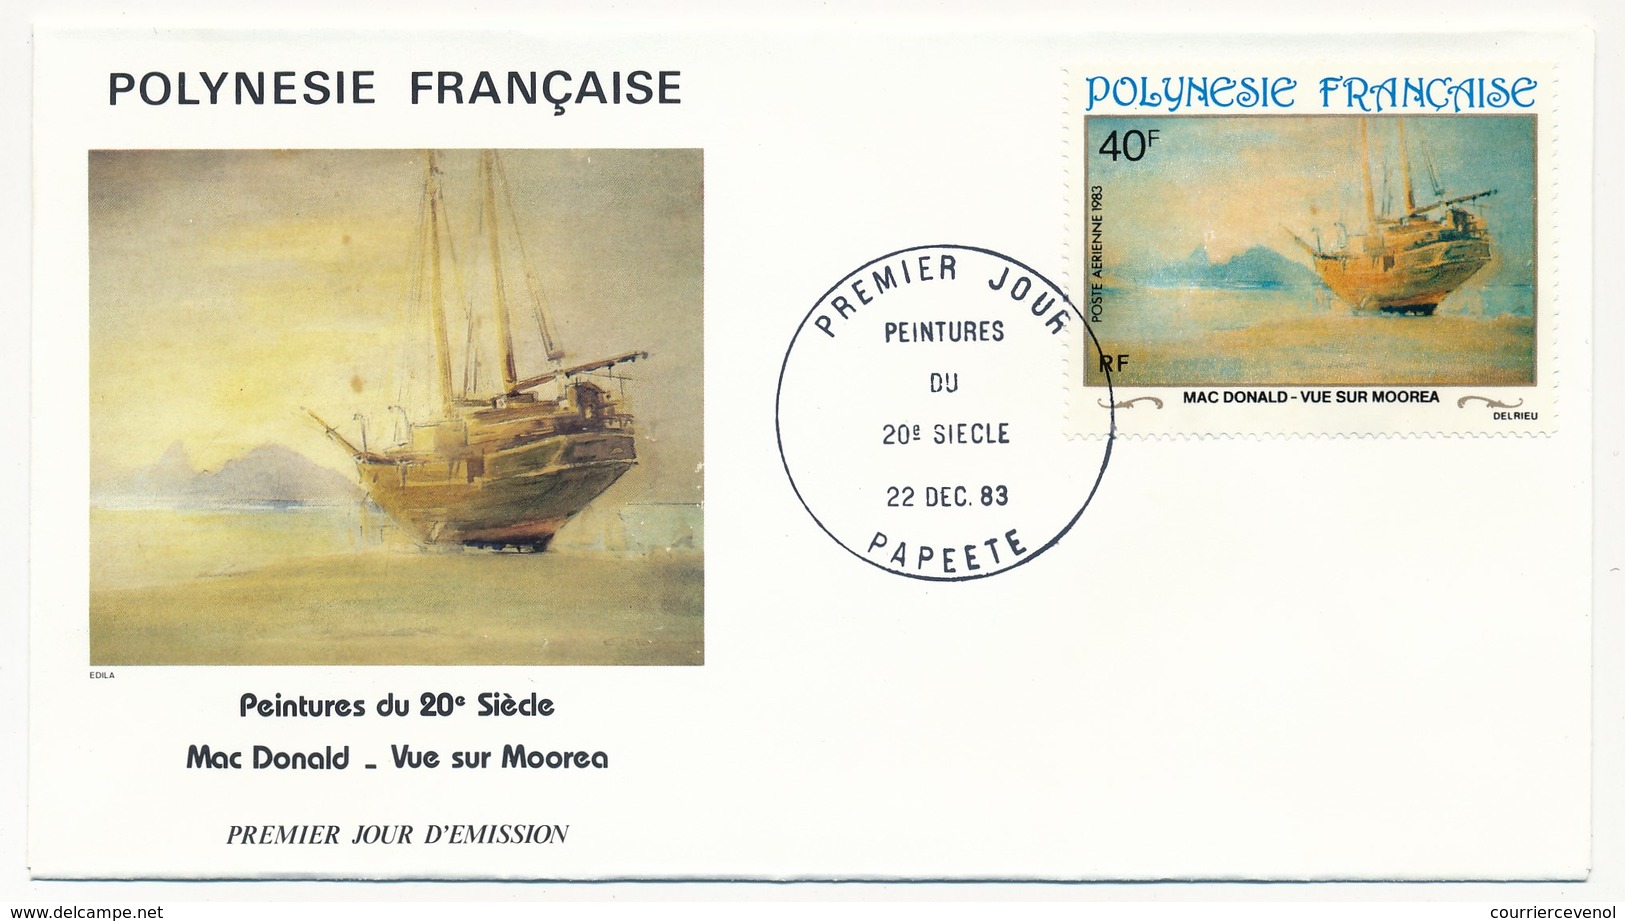 POLYNESIE FRANCAISE - 4 FDC - Peintures Du 20eme Siècle - 22 Dec 1983 - Papeete - FDC